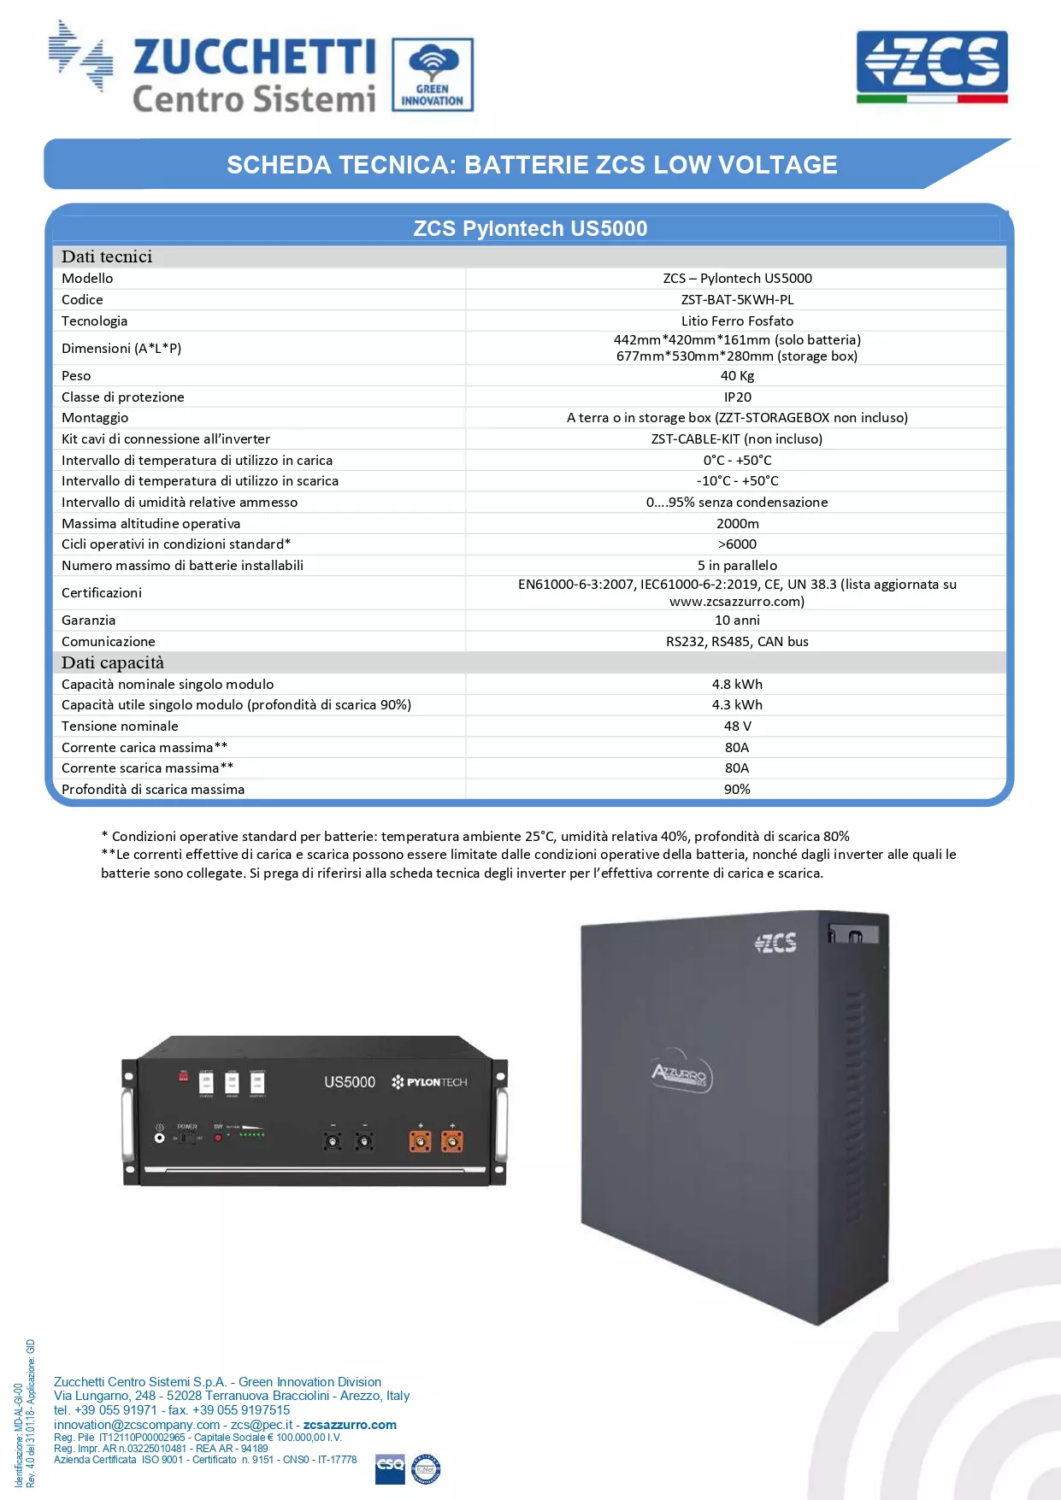 Pylontech US5000 Specifiche tecniche batteria LV al litio ZCS per impianti fotovoltaici con sistemi di accumulo